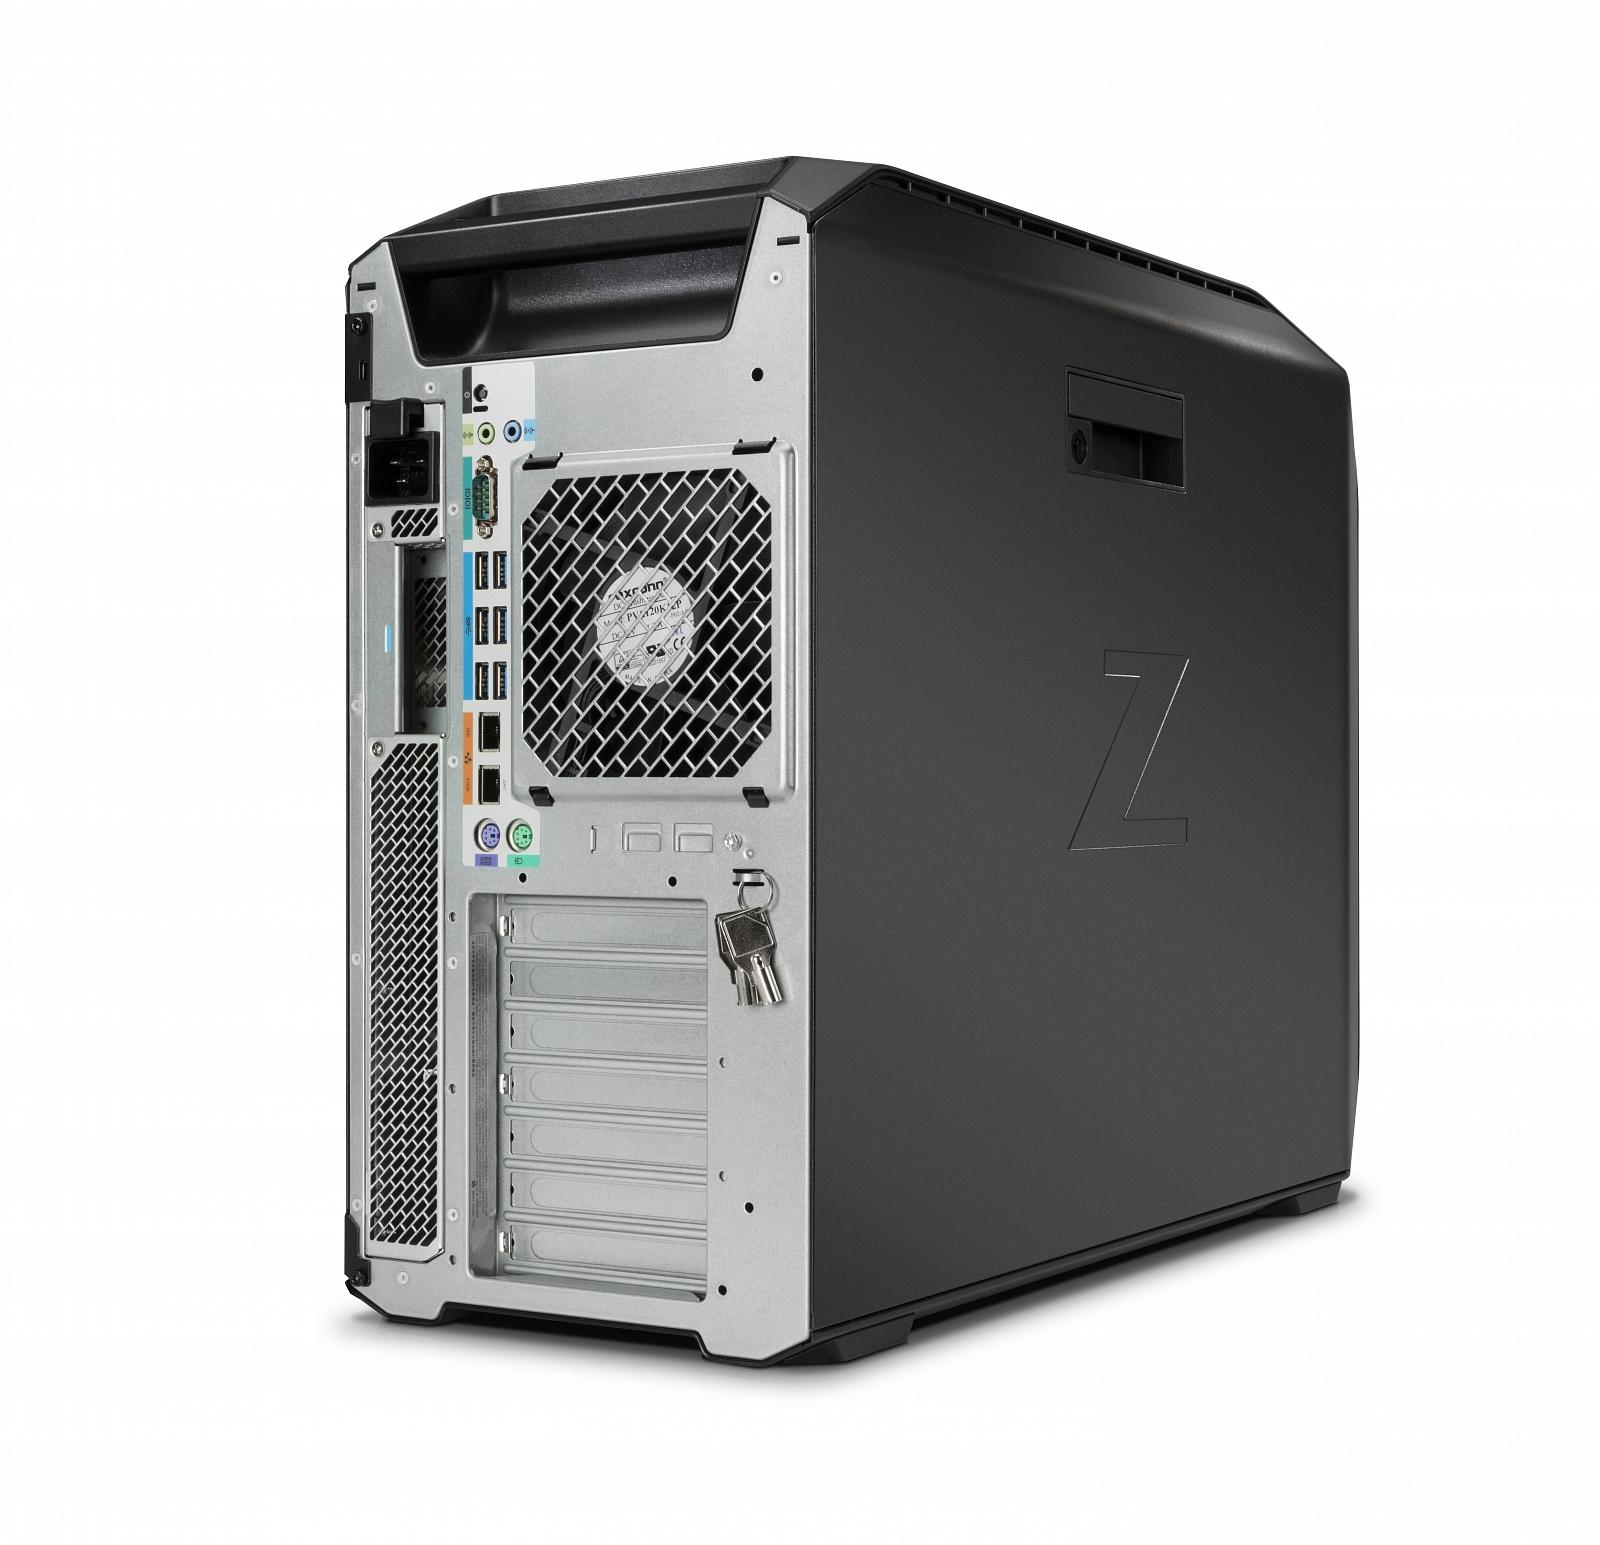   HP Z8 G4 Workstation (2WU48EA)  2